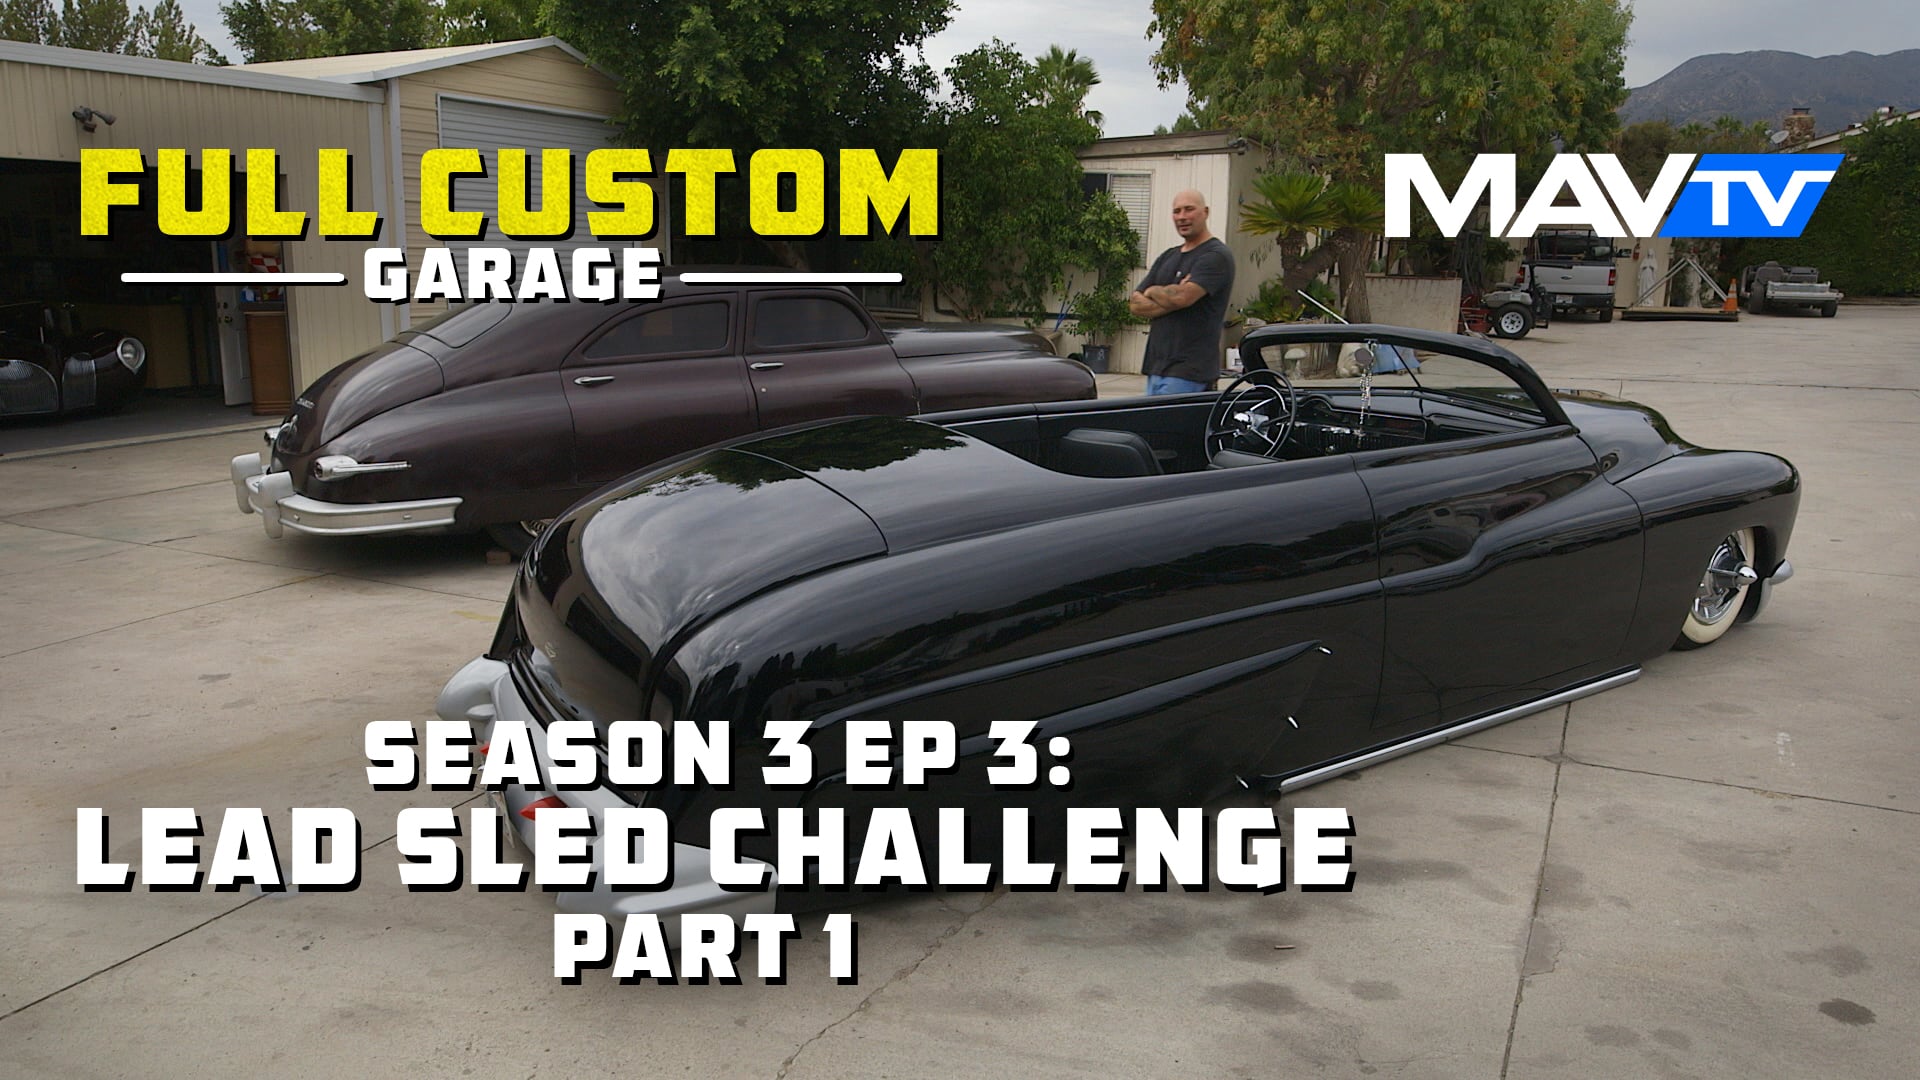 Full Custom Garage – Season 3 Episode 3: Lead Sled Challenge Part 1